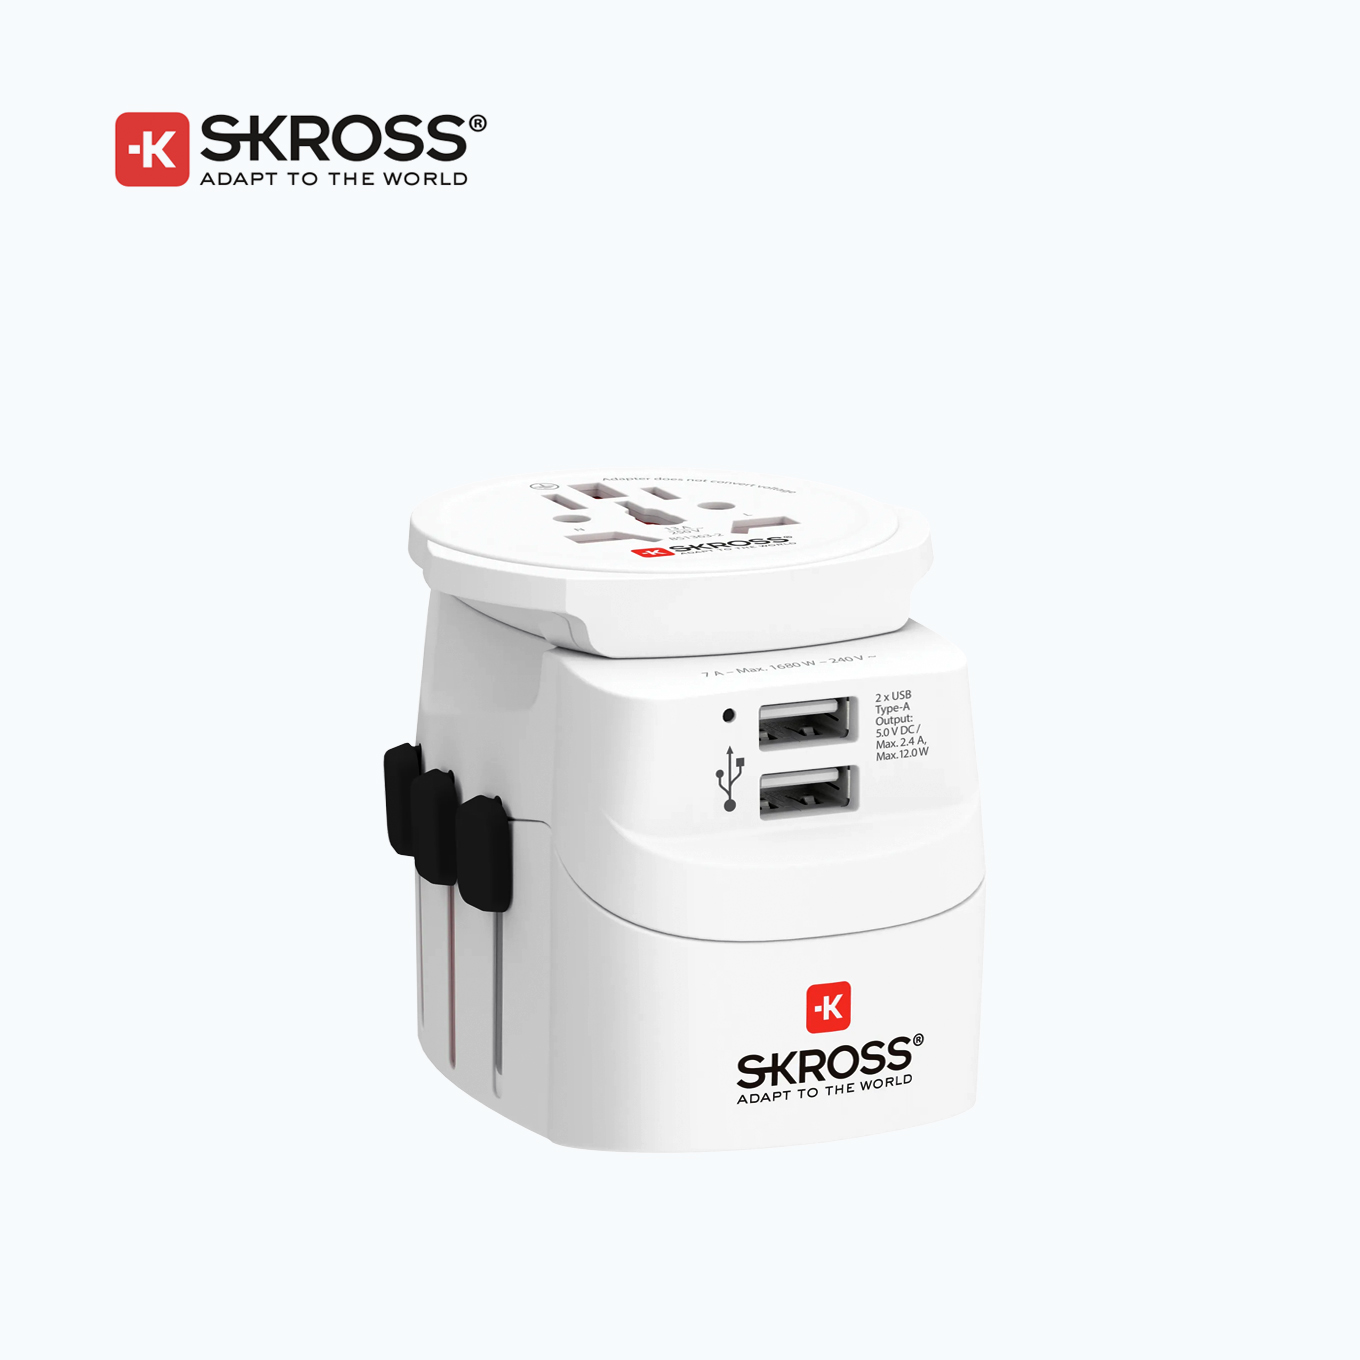 Skross PRO Light USB X2-World, 3 Slides Universal Travel Adapter with EU Adapter